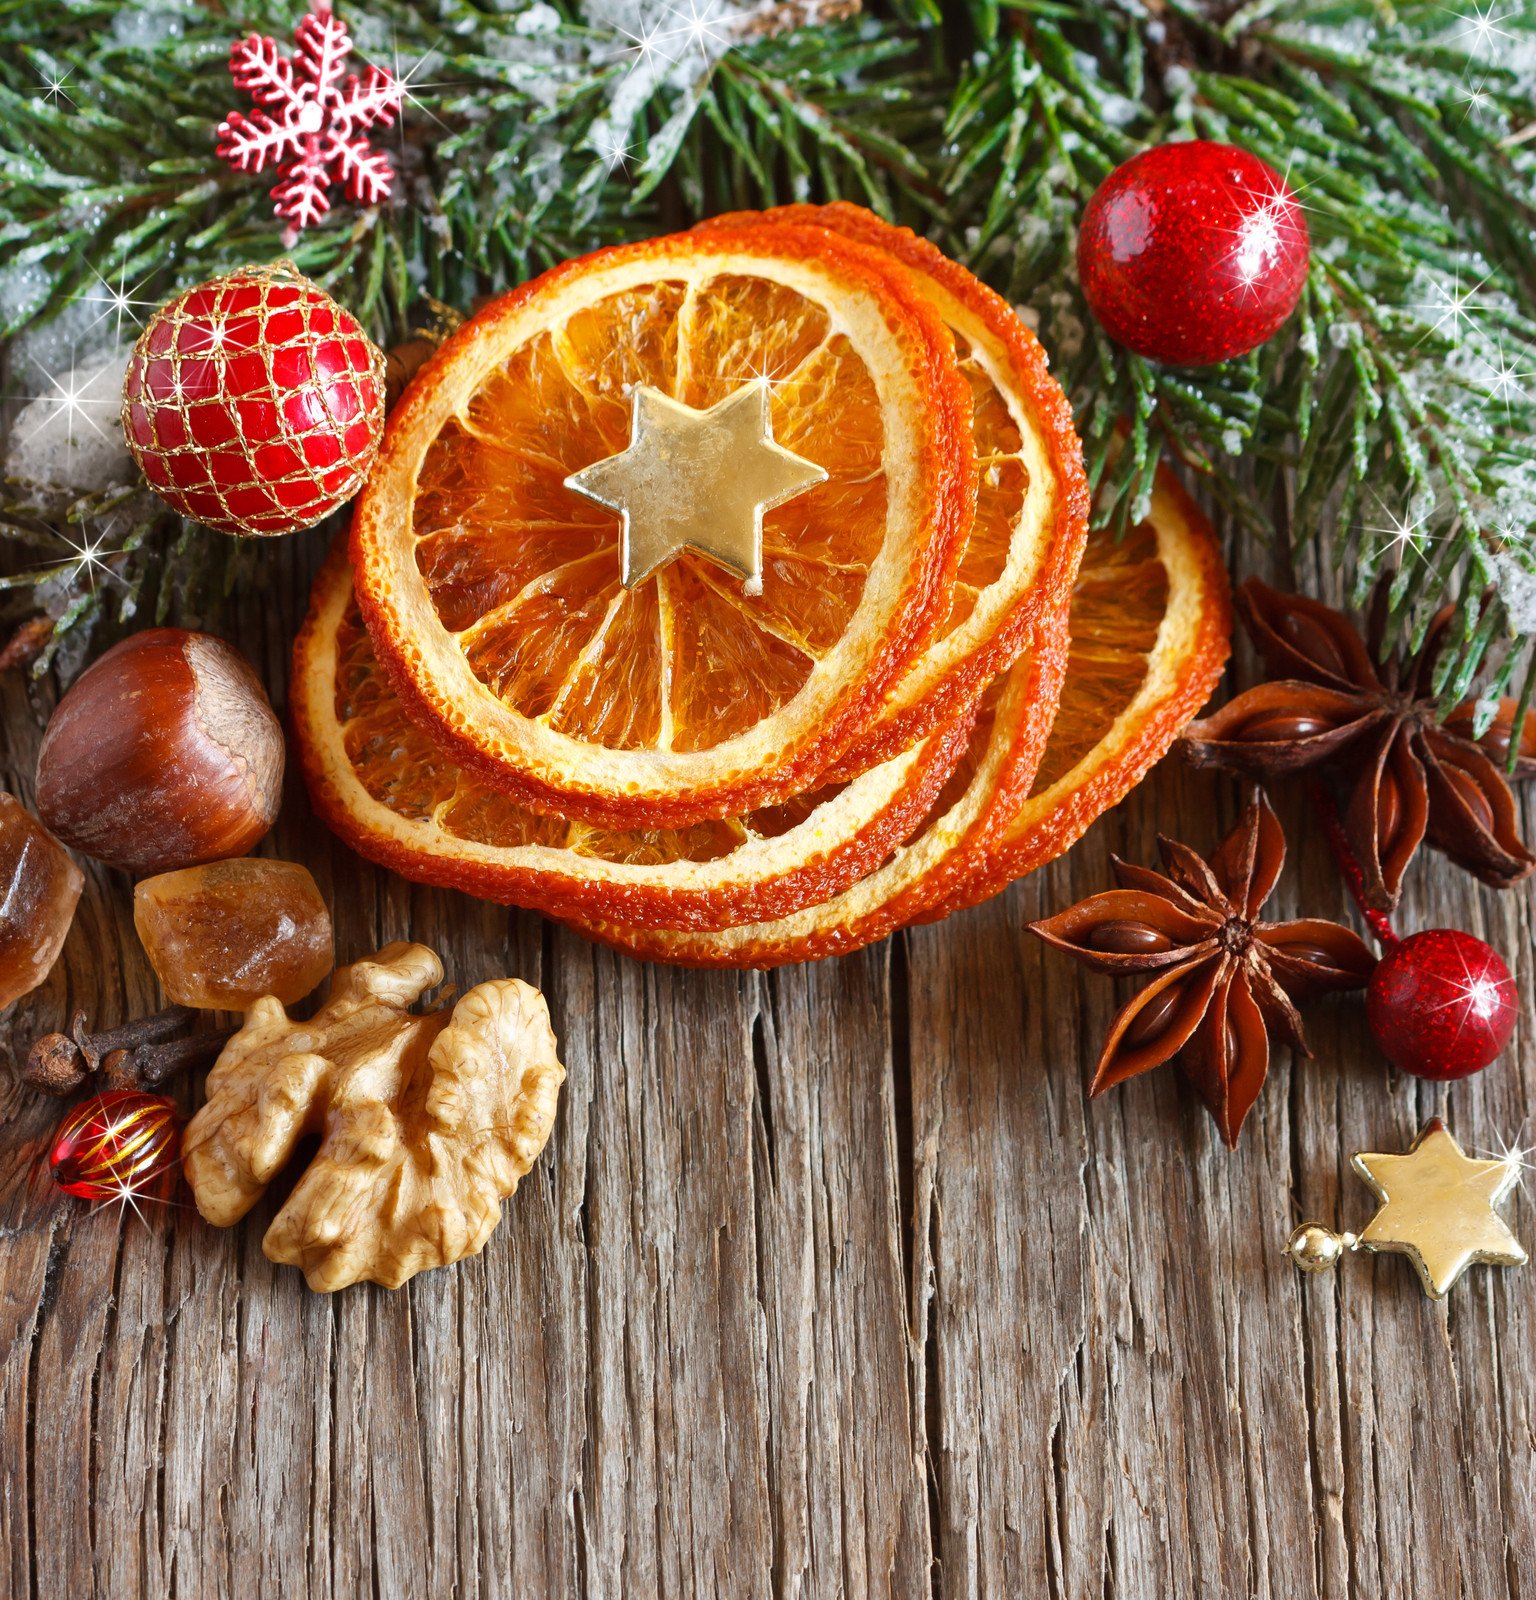 Faça sua própria decoração de Natal com frutas cítricas – Villalva Frutas